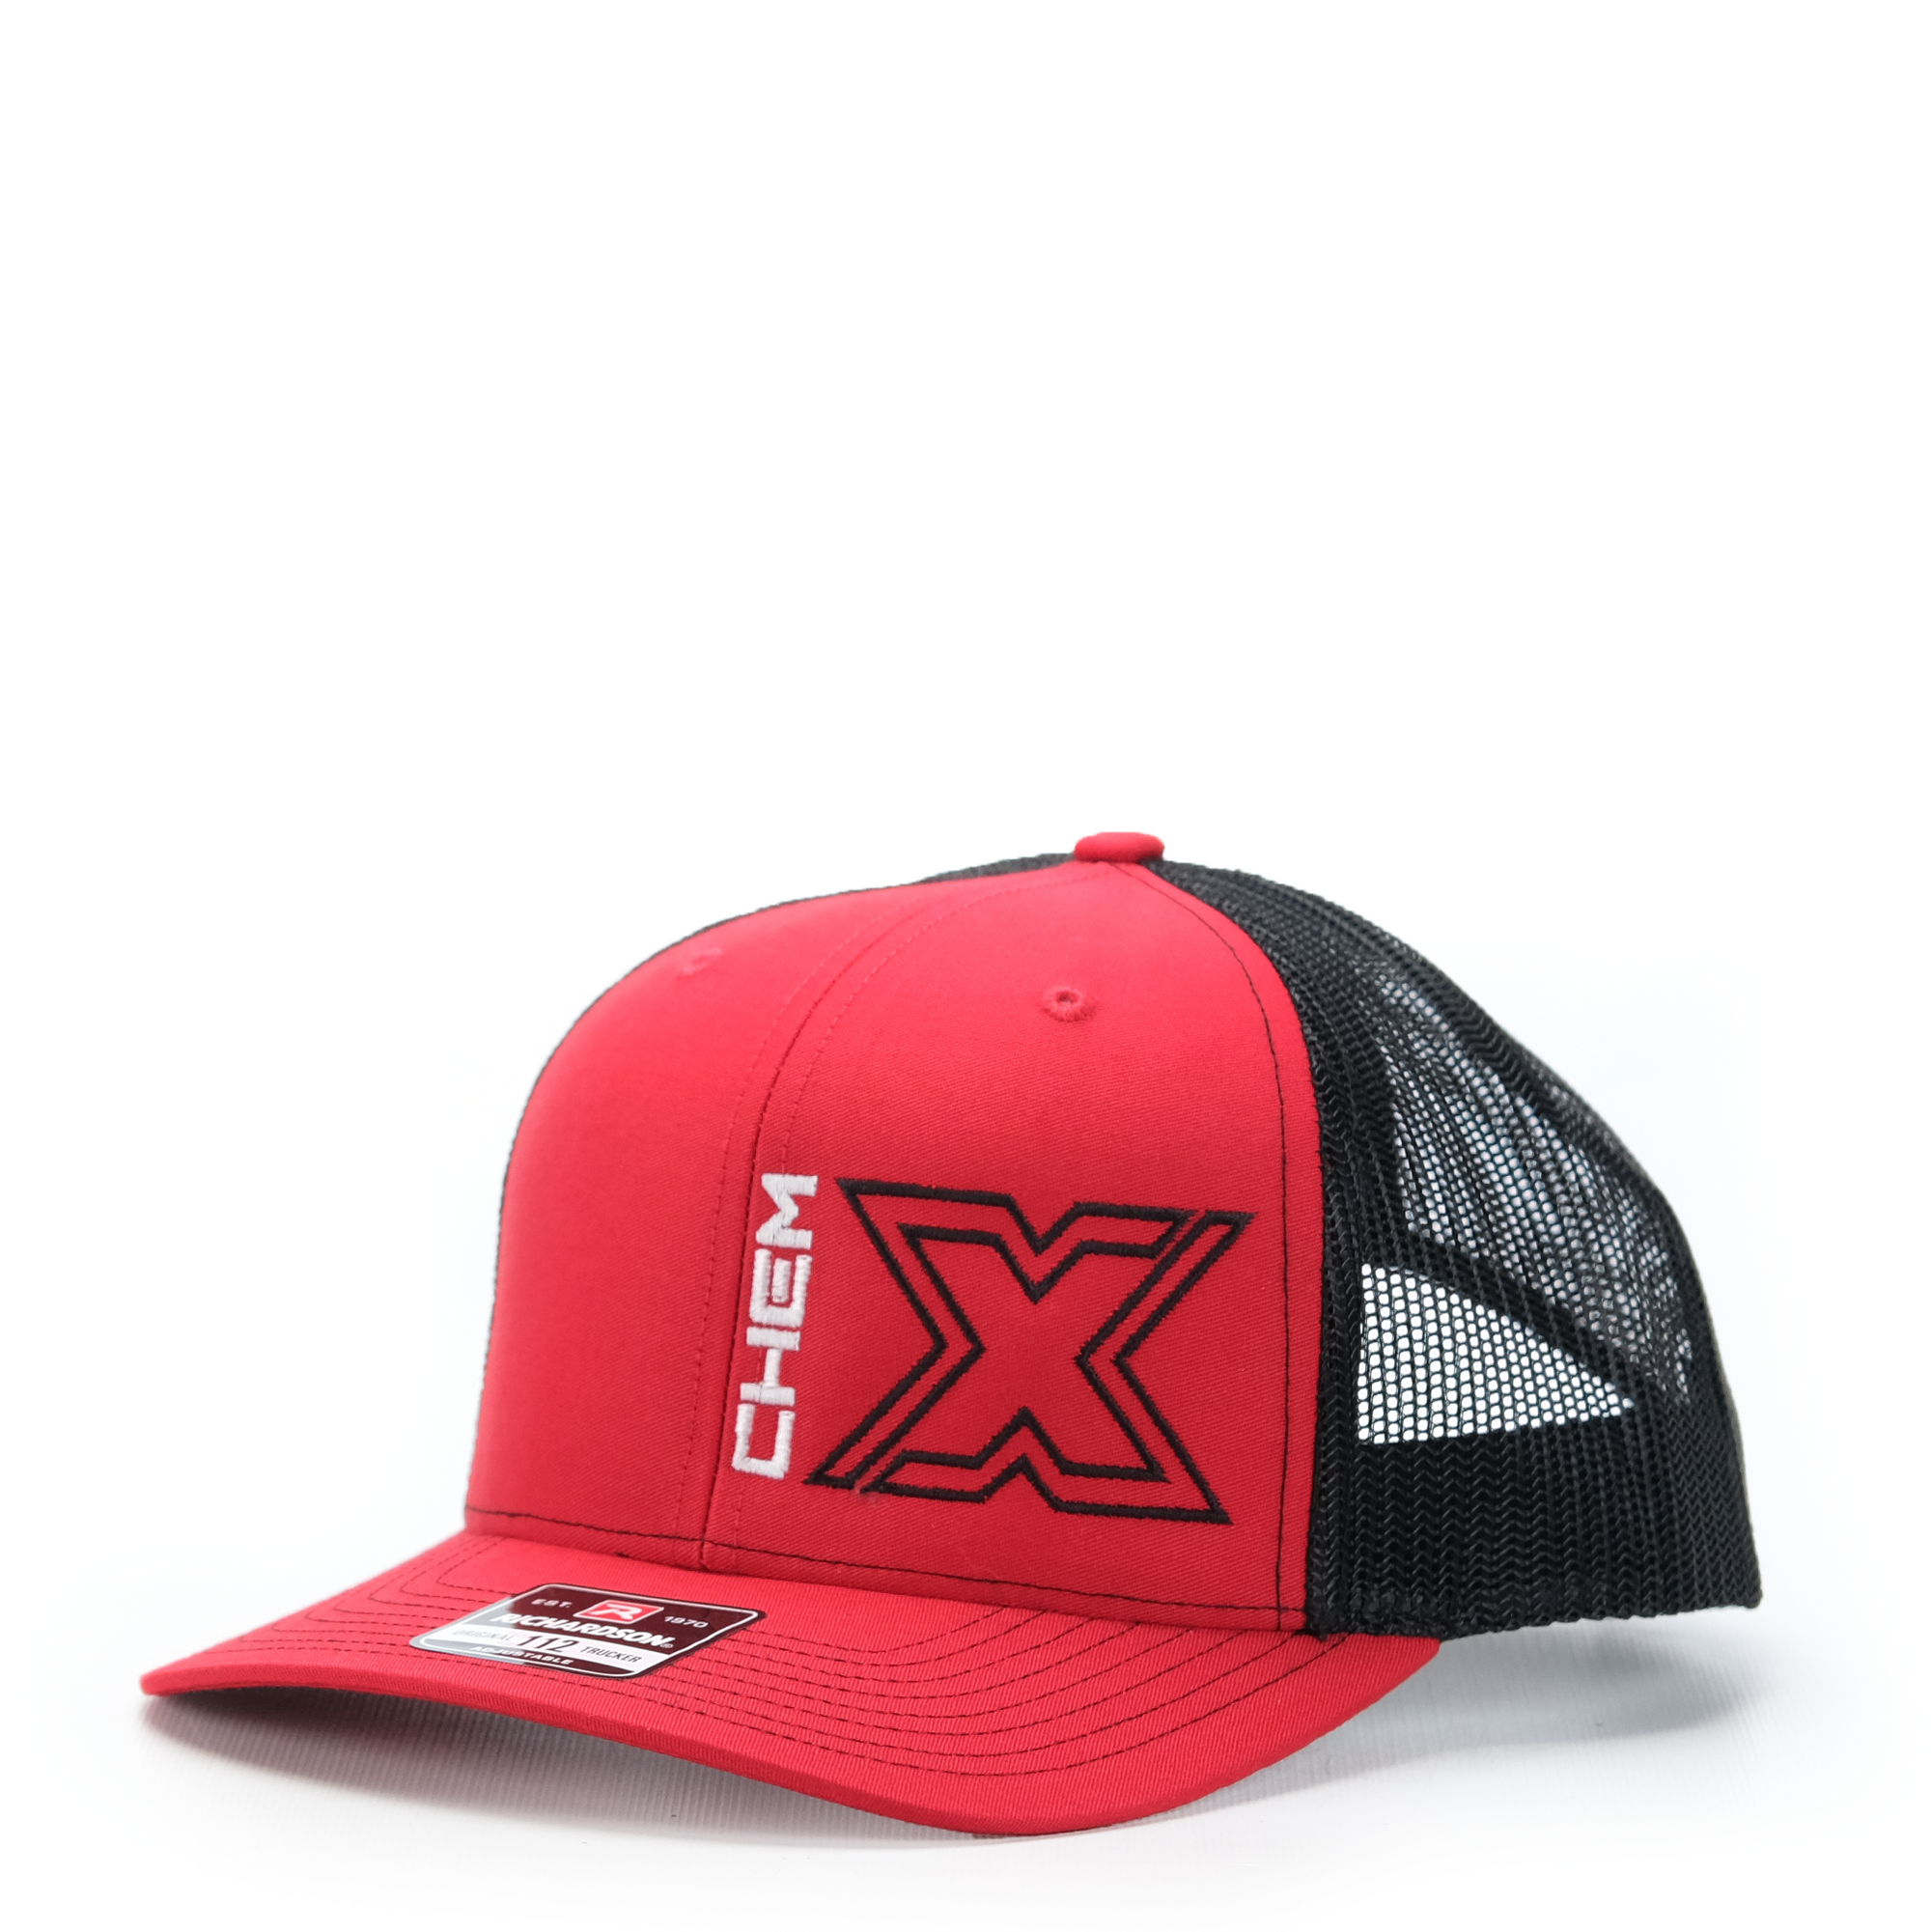 Chem-X Trucker Hat: Richardson 112 Royal / White / Red